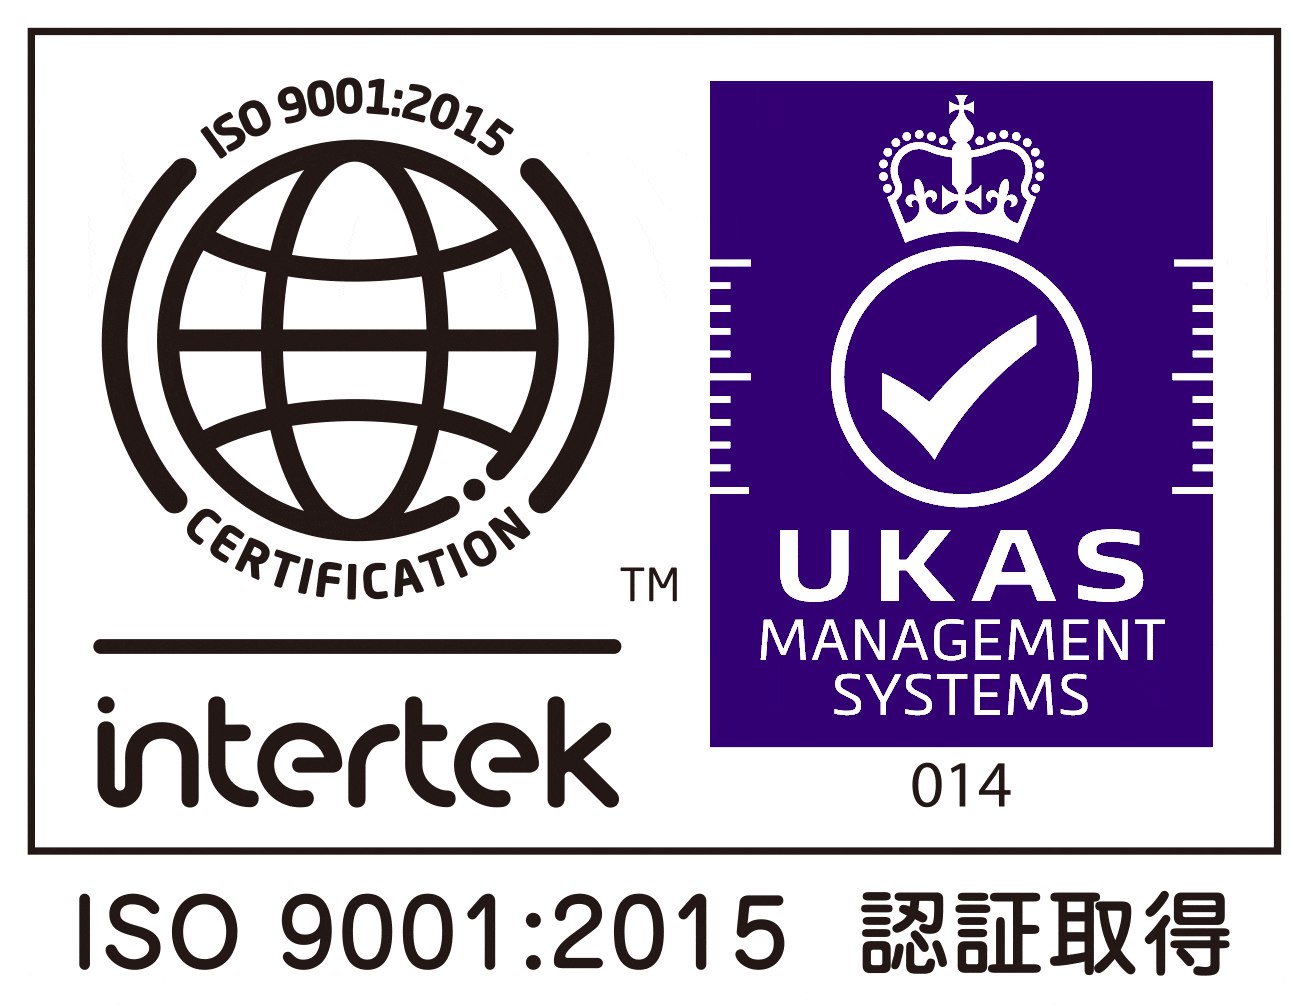 Intertek_logo